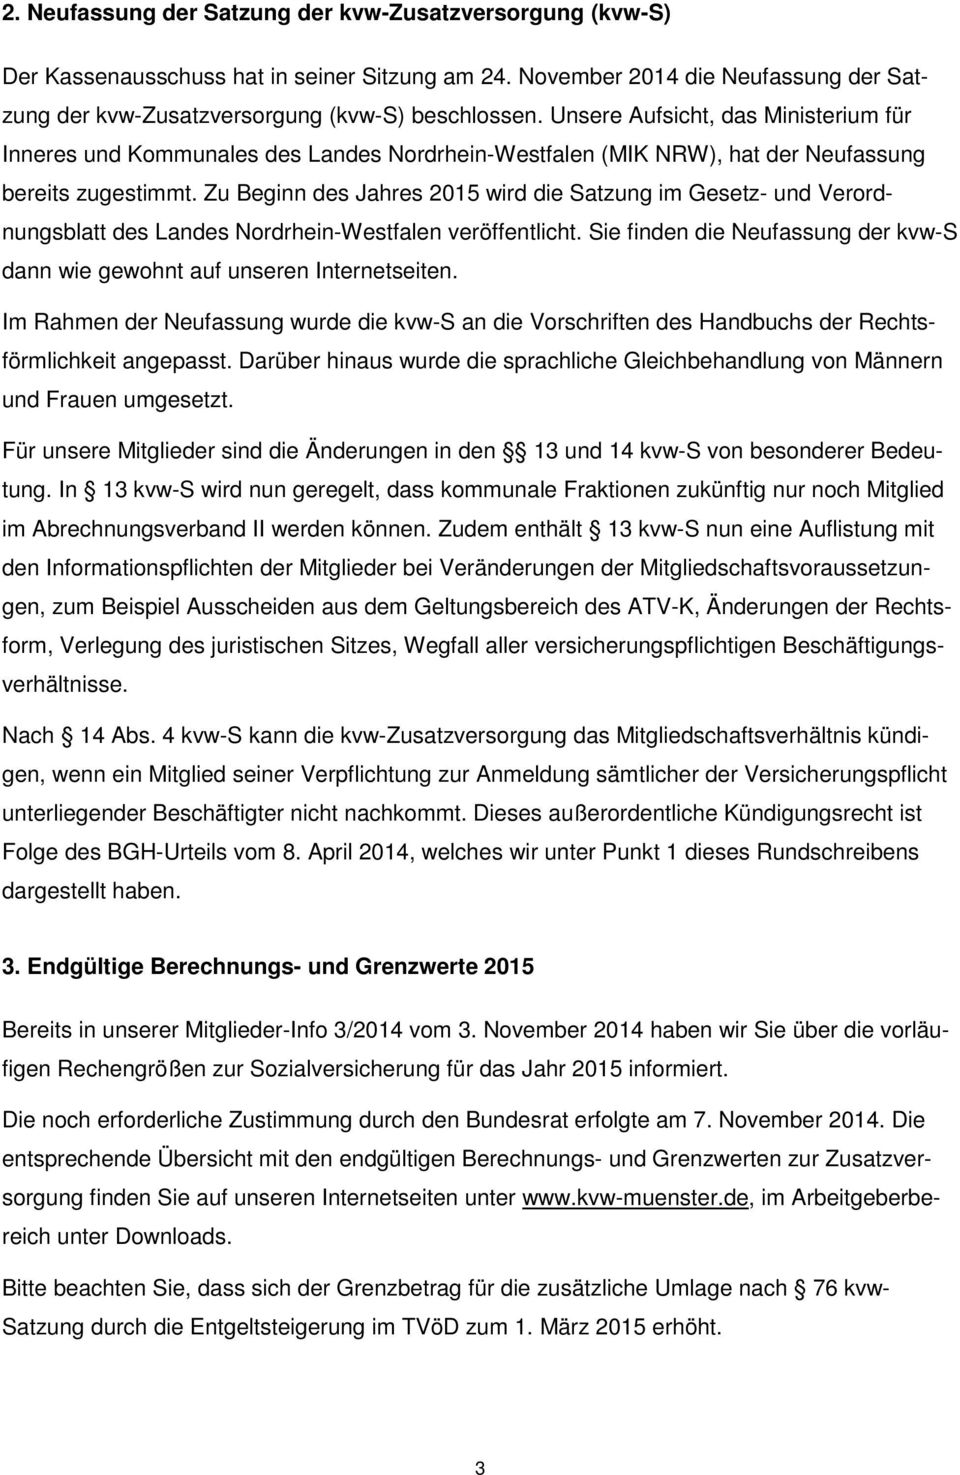 Zu Beginn des Jahres 2015 wird die Satzung im Gesetz- und Verordnungsblatt des Landes Nordrhein-Westfalen veröffentlicht.